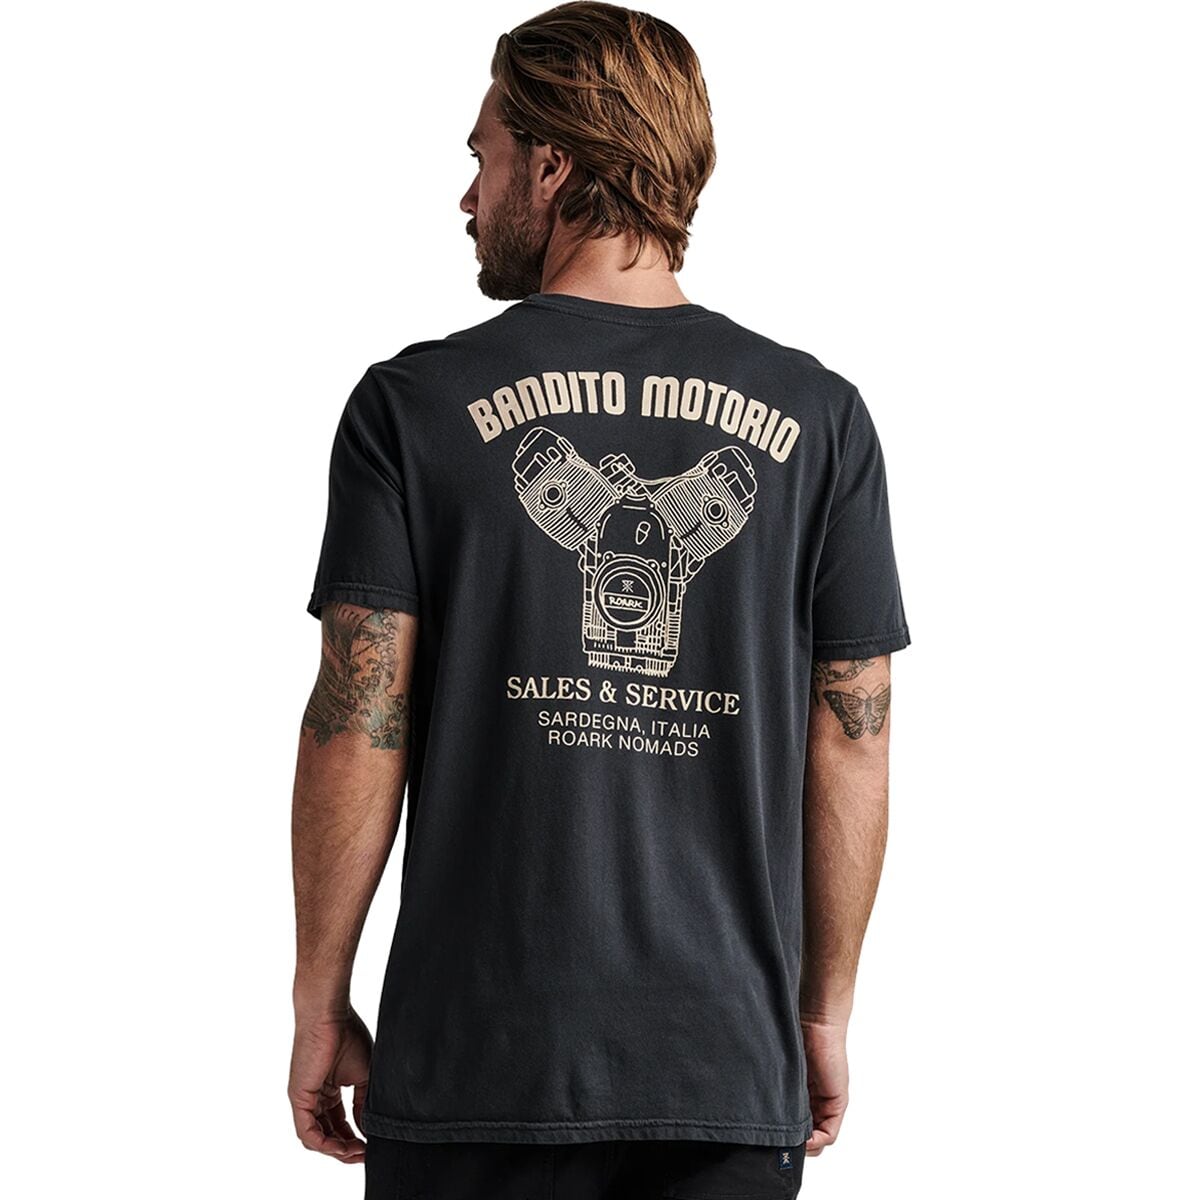 Bandito Motorio T-Shirt - Men